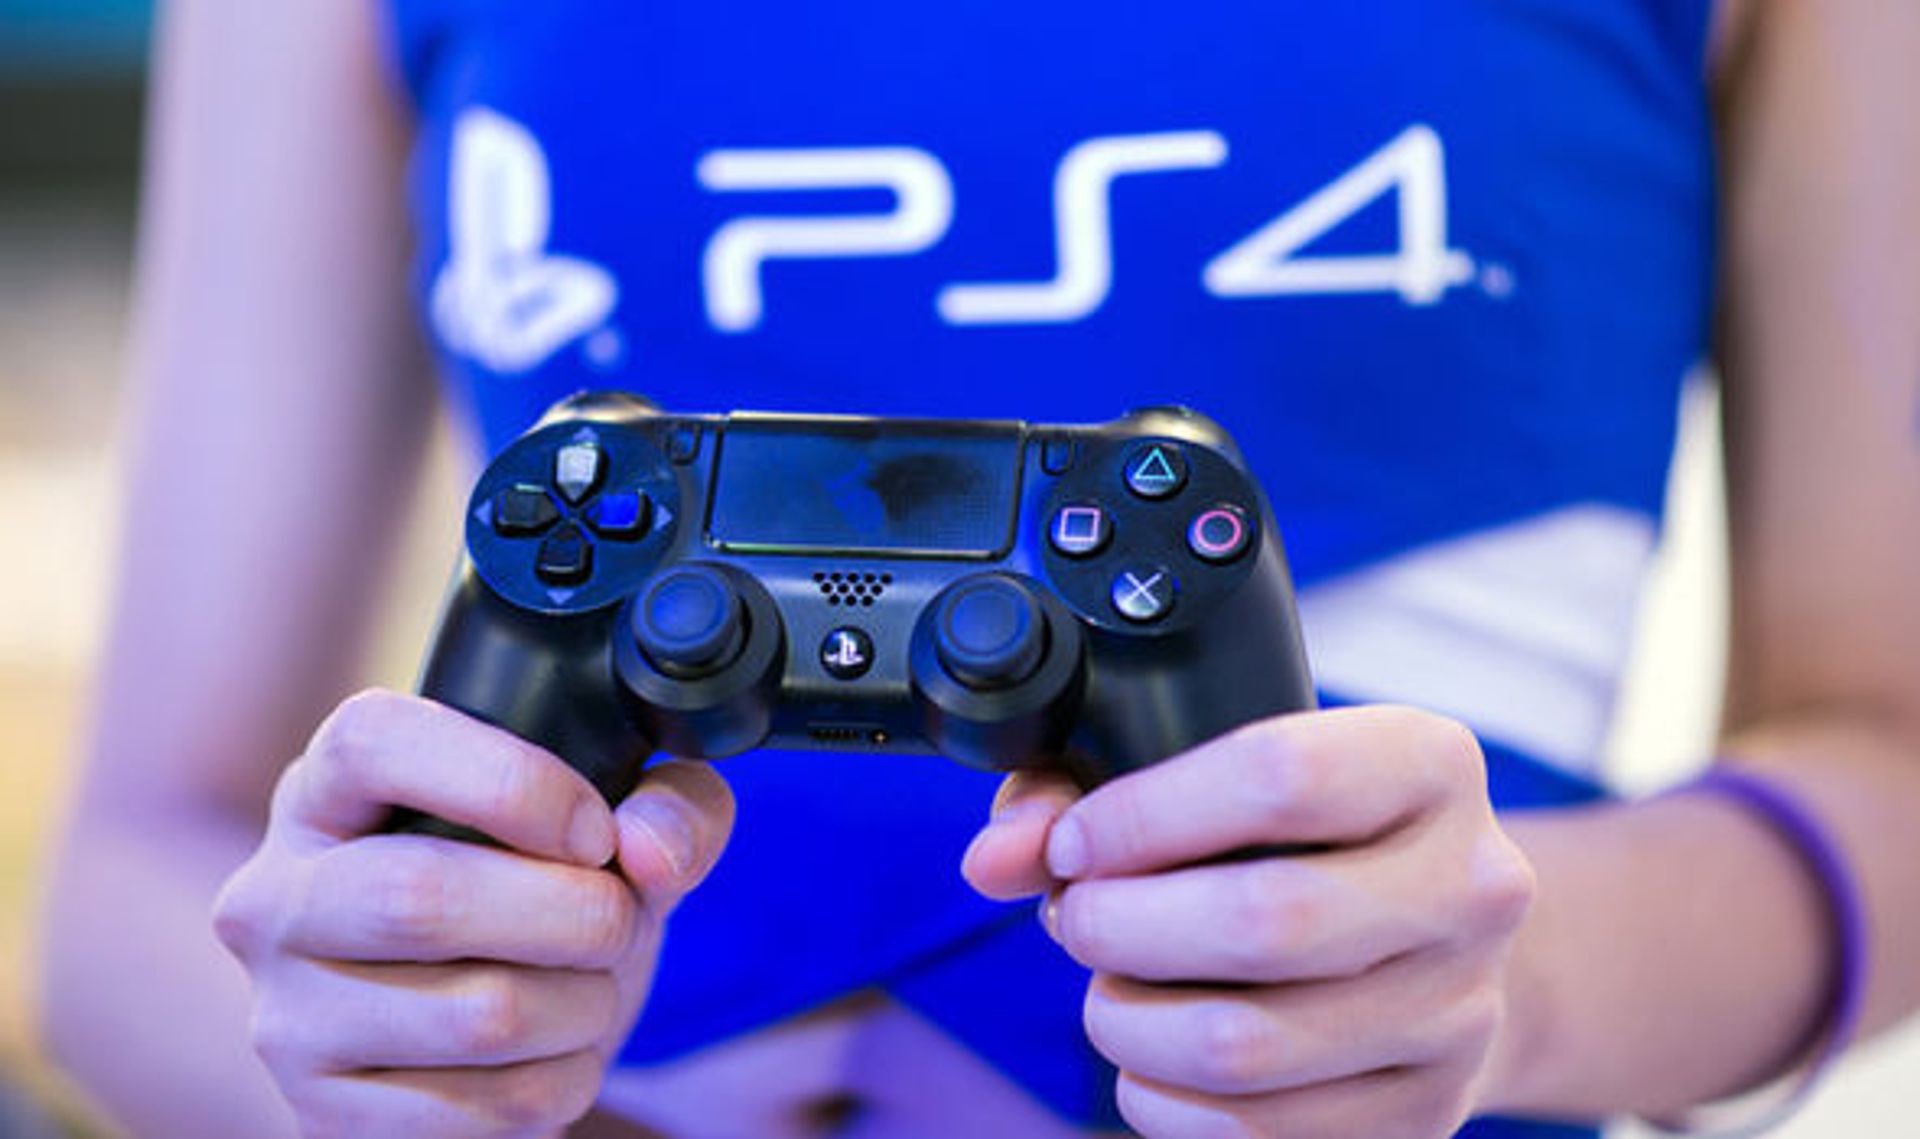 PlayStation 5 releasedatum patentaanvraag